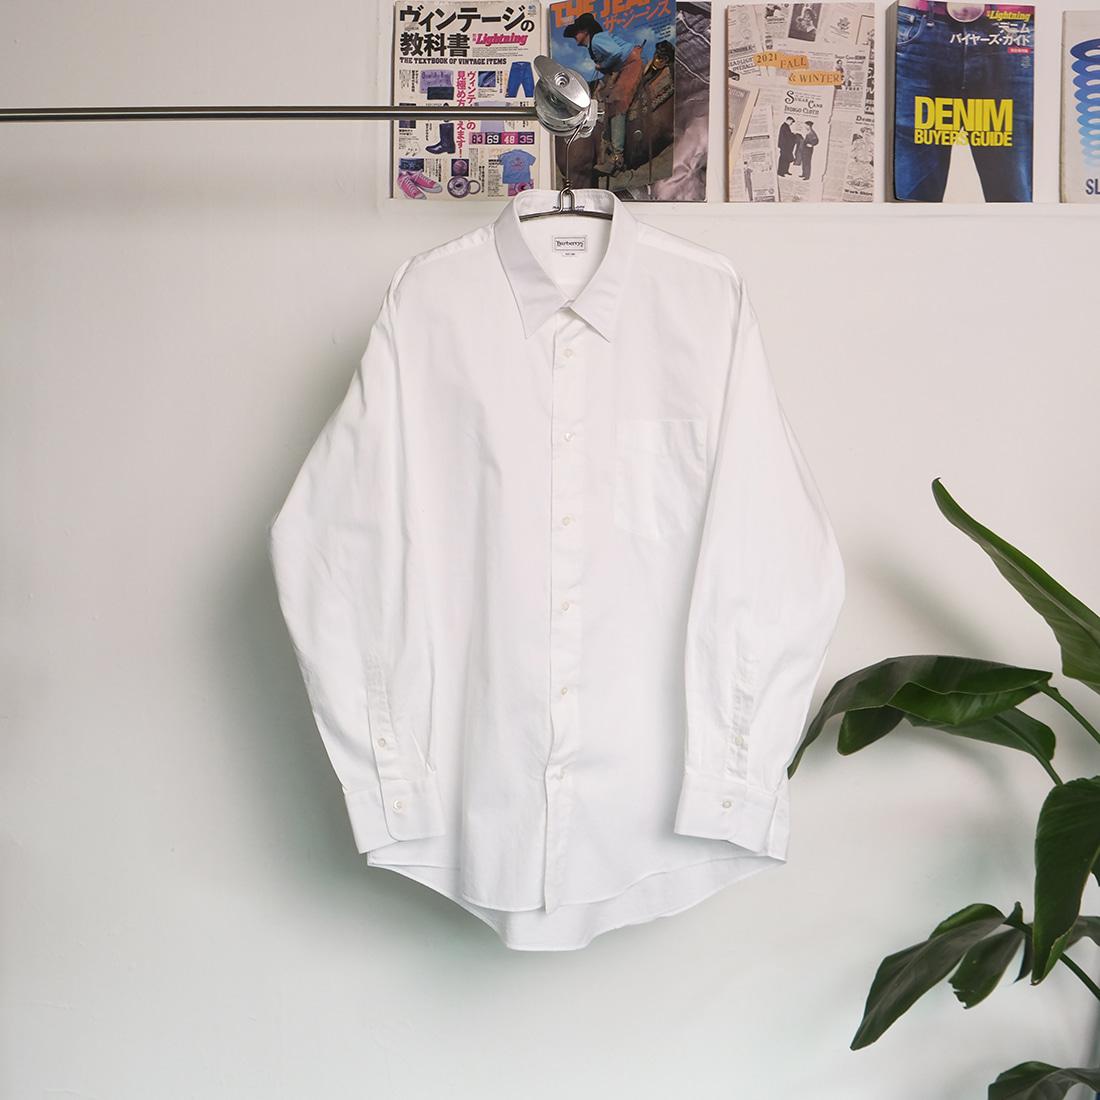 버버리 / Made in japan  Burberrys dress shirt